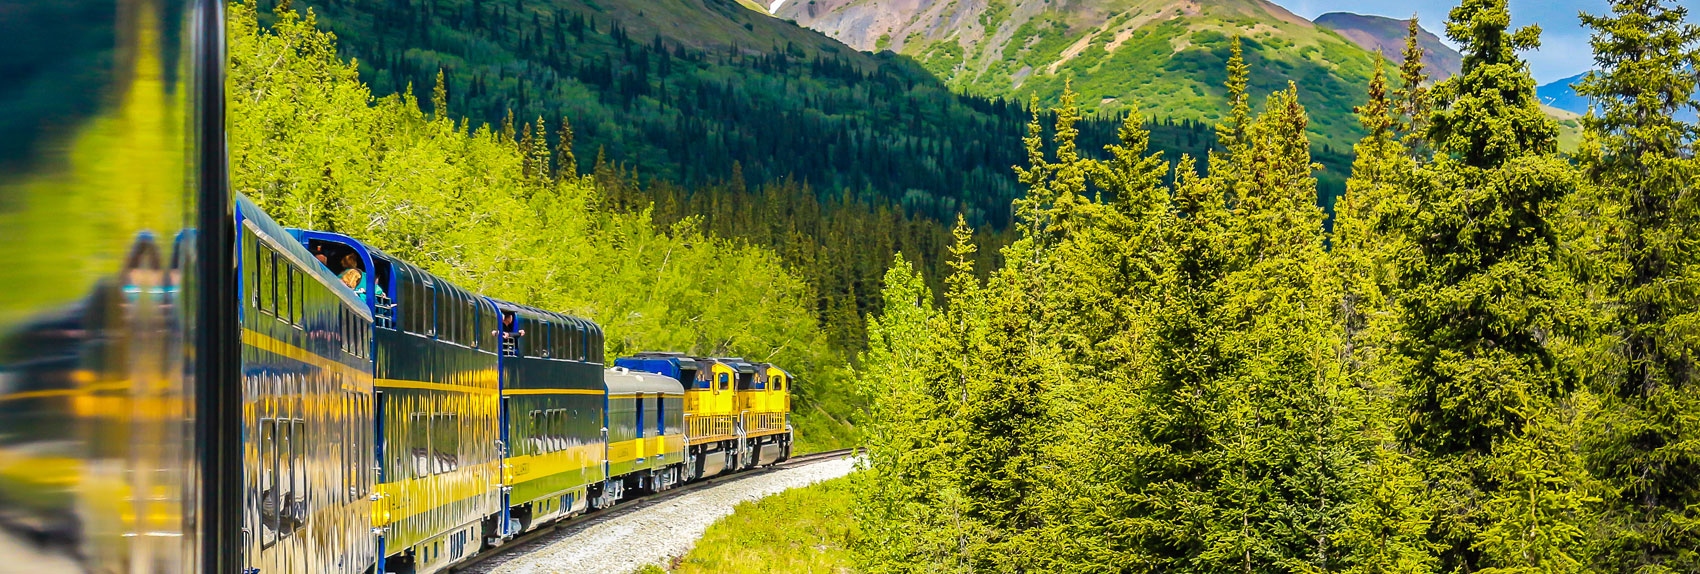 Take a scenic train ride on a luxury dome railcar.